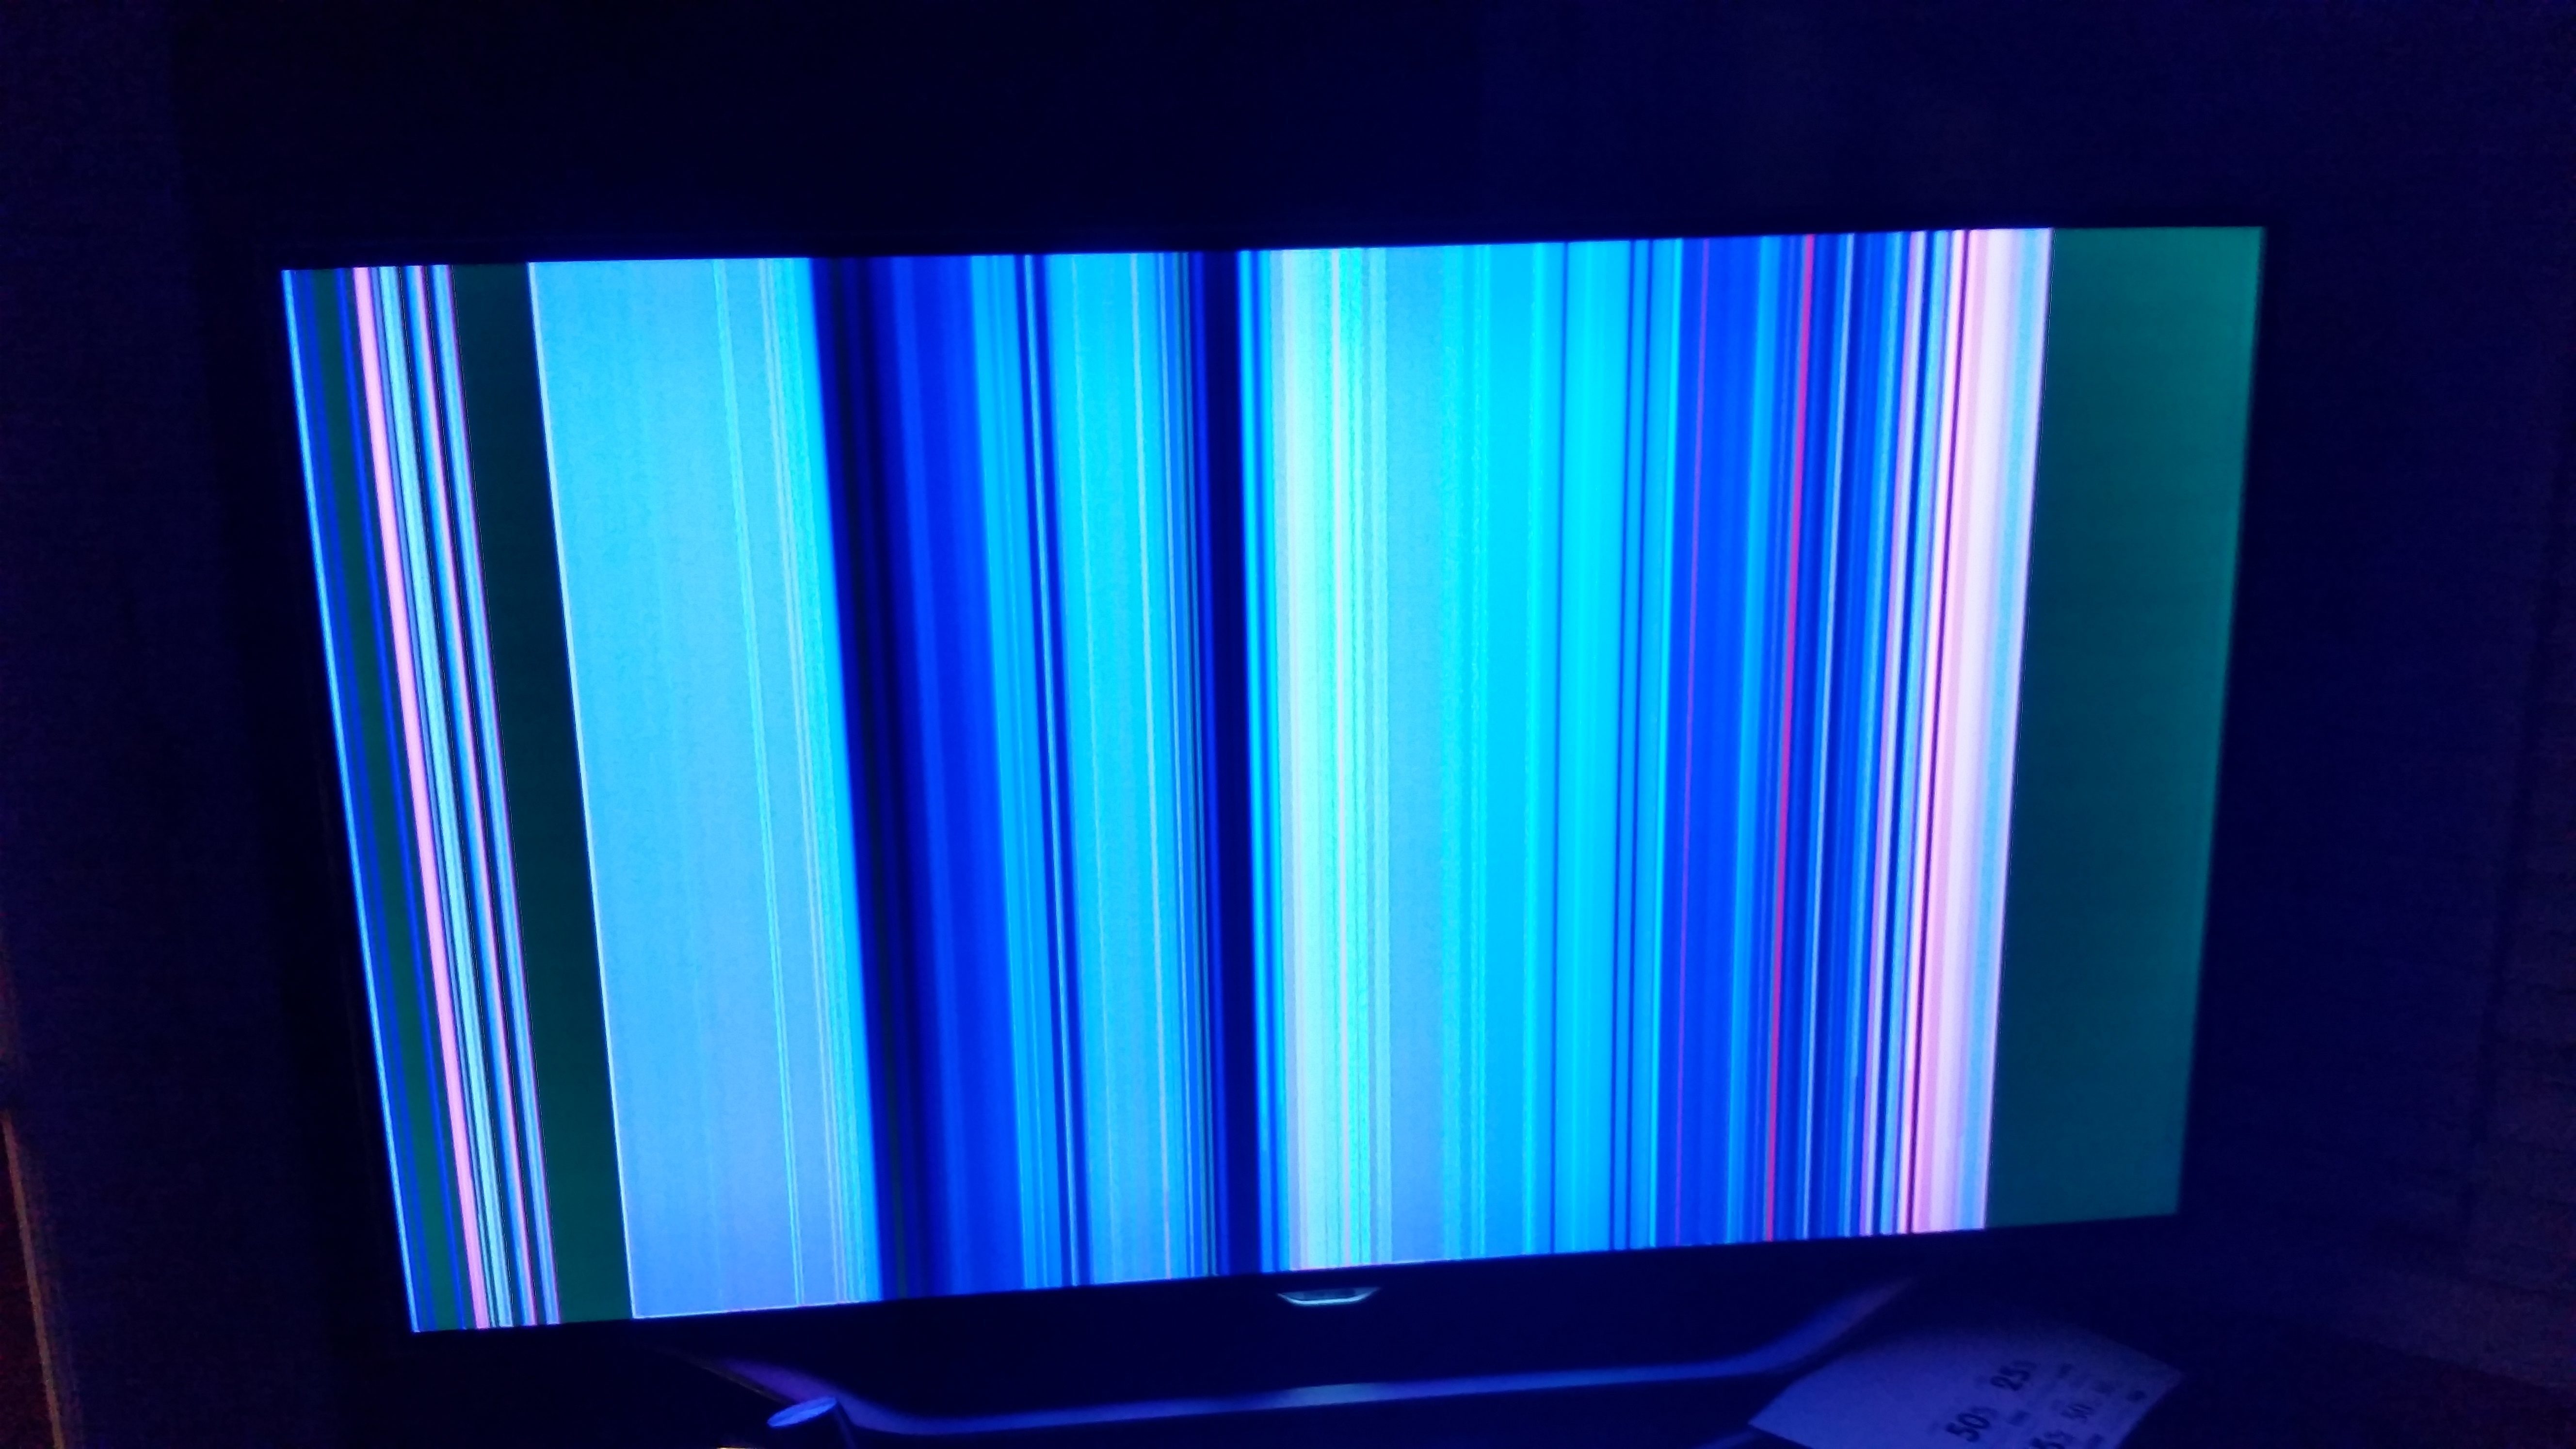 Телевизор пошел полосами. Телевизор Филипс горизонтальные полосы на экране. Вертикальные полосы на телевизоре. Экран телевизора. Полосымеа экране телевизора.